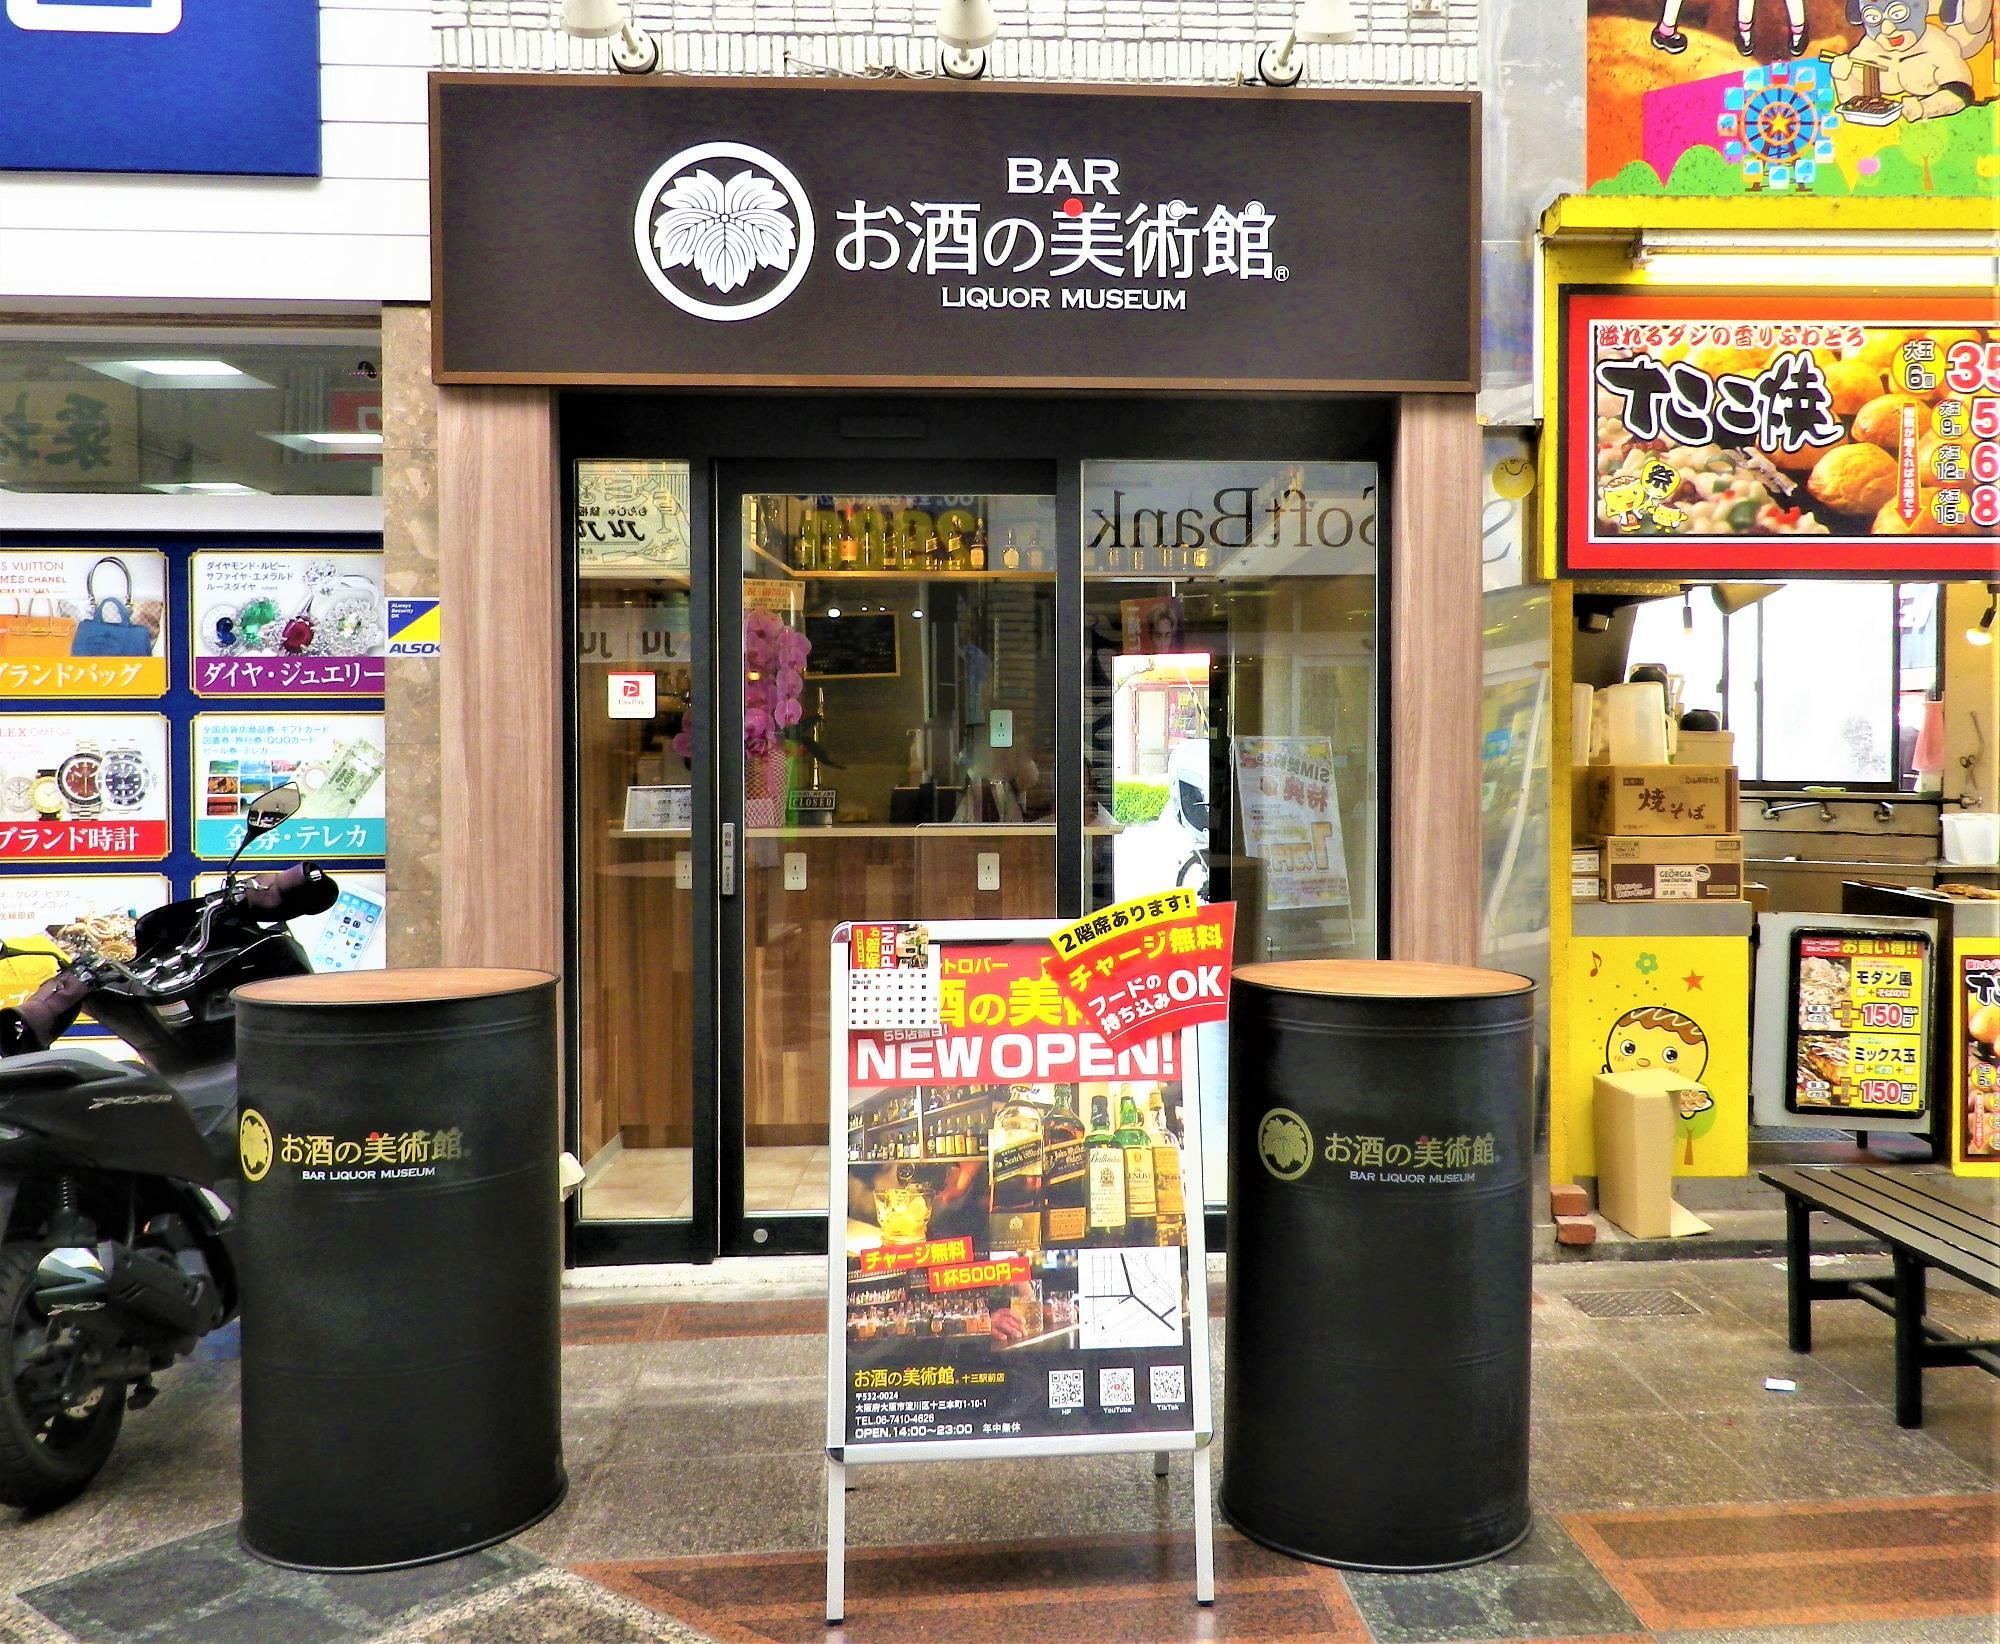 以前のお店は、冷凍餃子24時間無人販売所「神戸元町餃子 十三フレンドリー商店街店」。